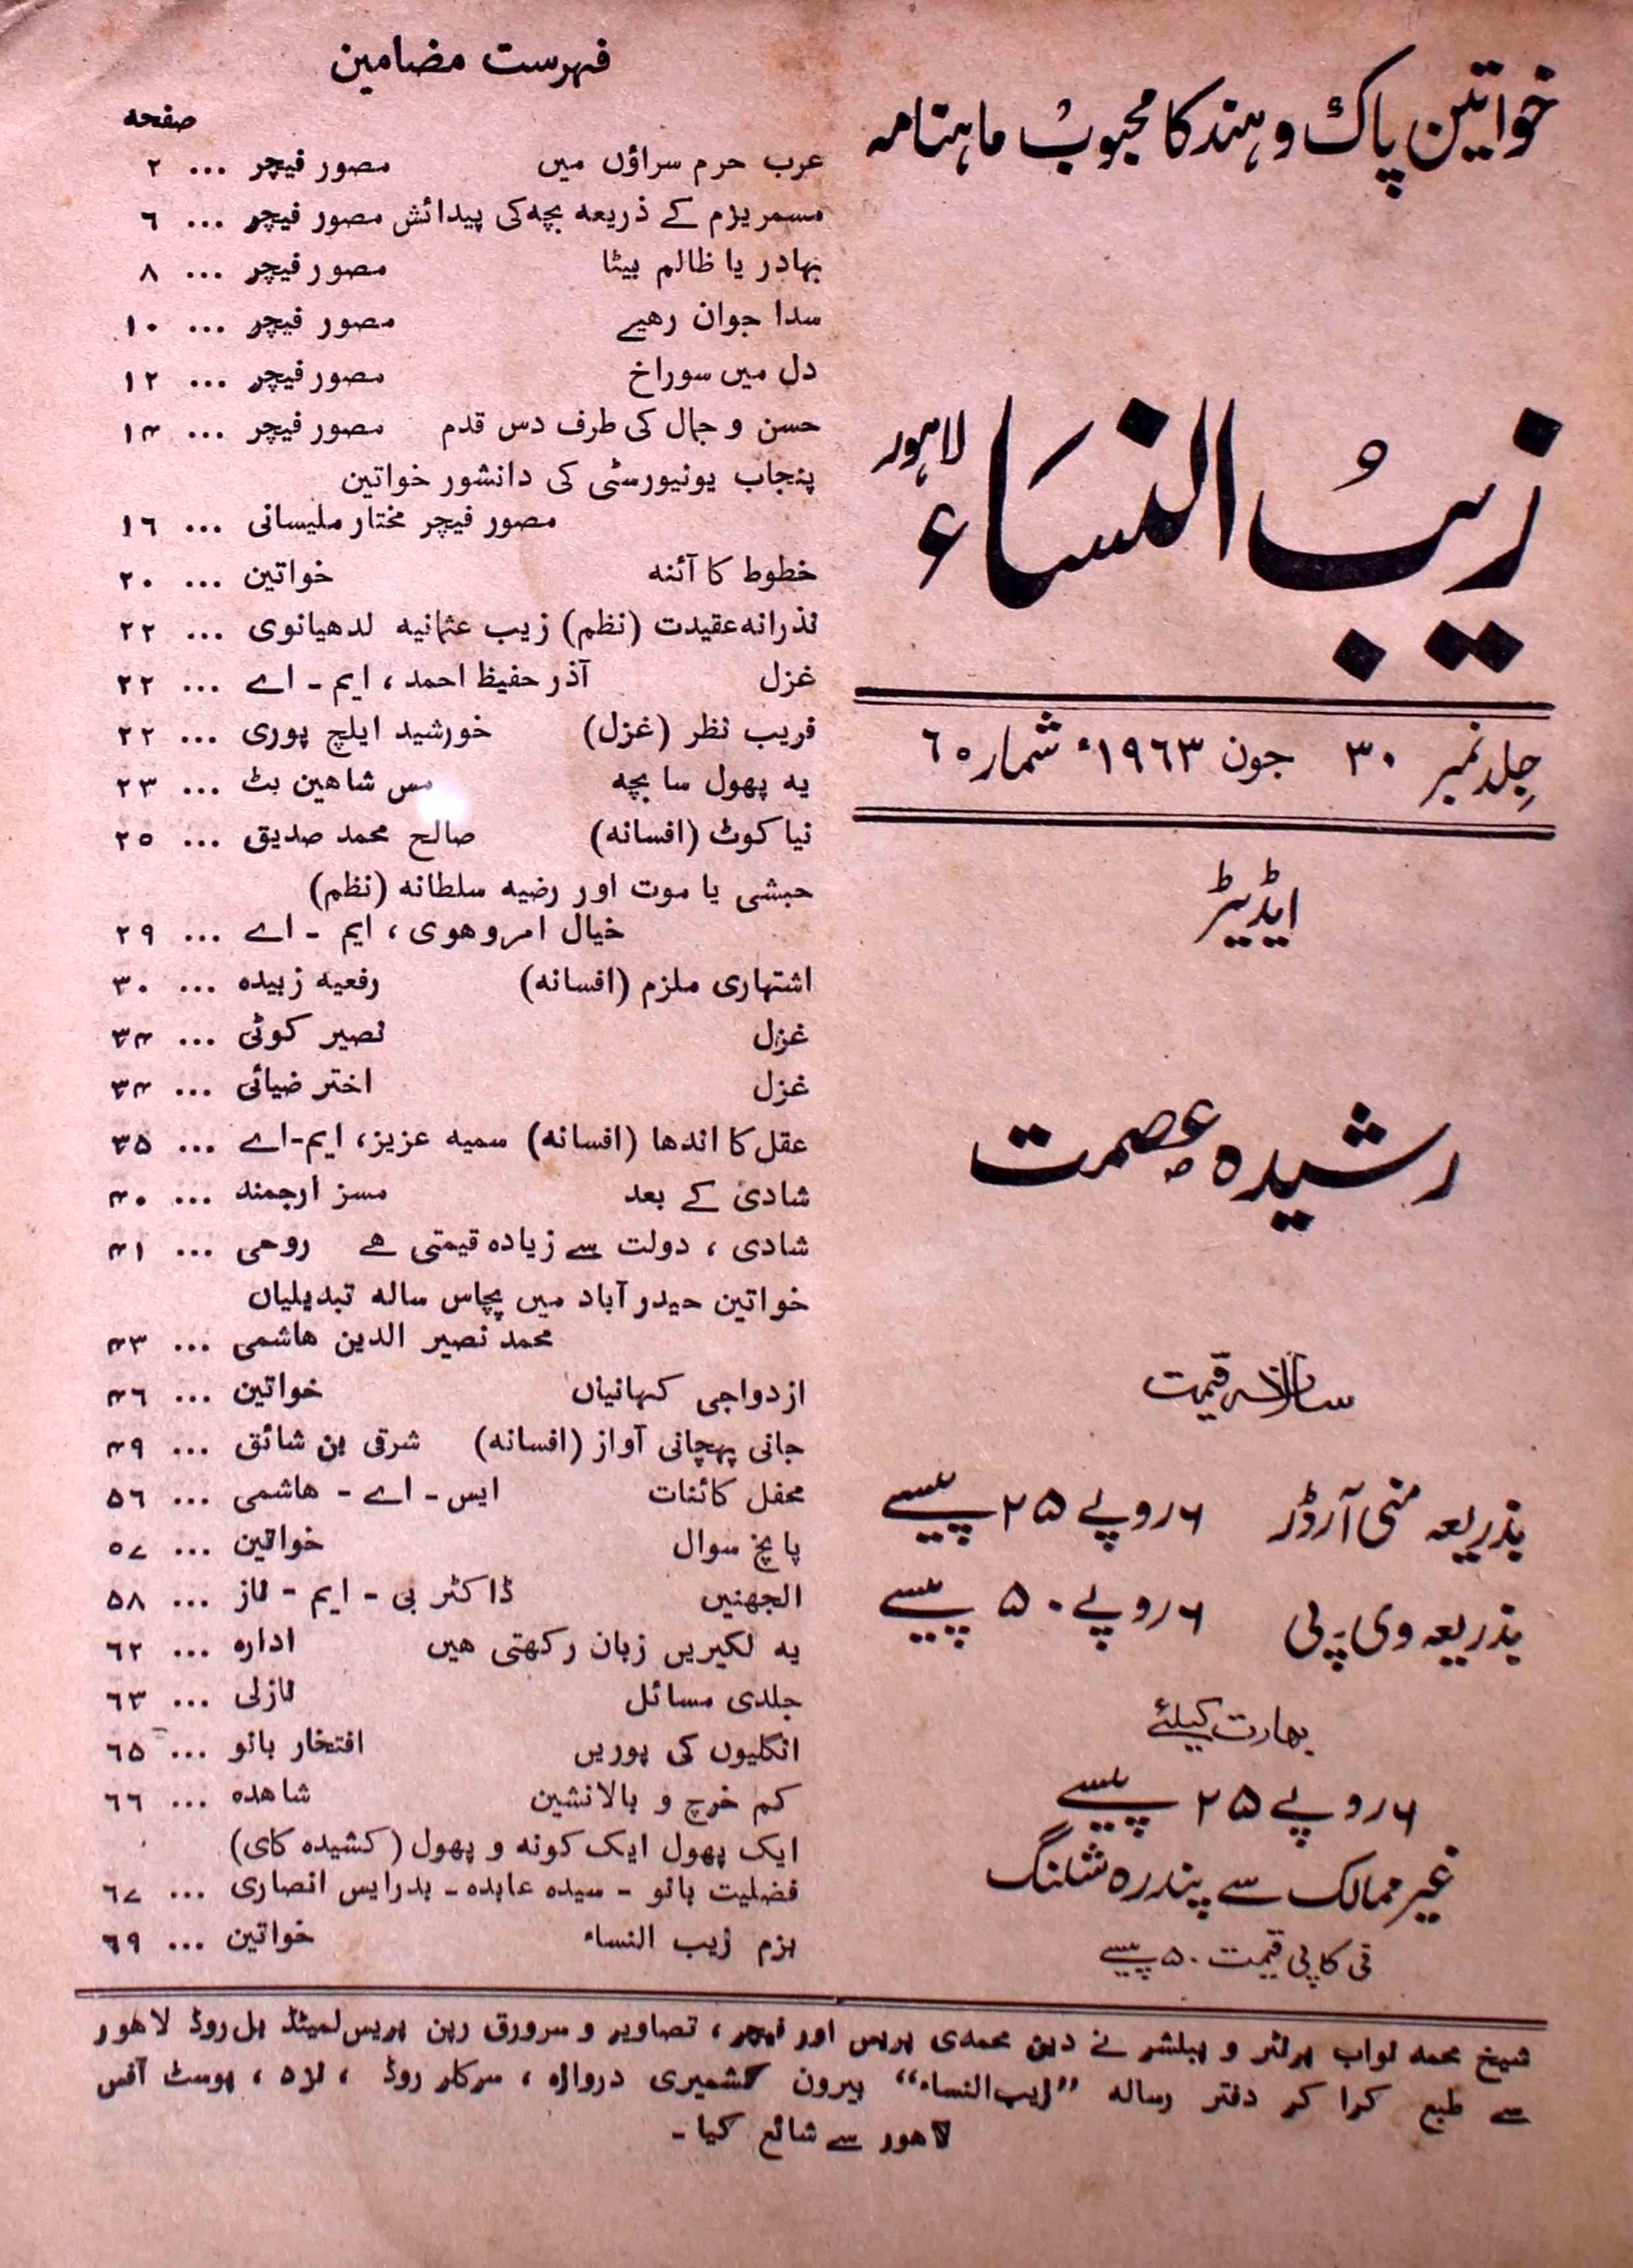 zaib-un-nisa-shumara-number-006-rasheeda-ismat-magazines-1